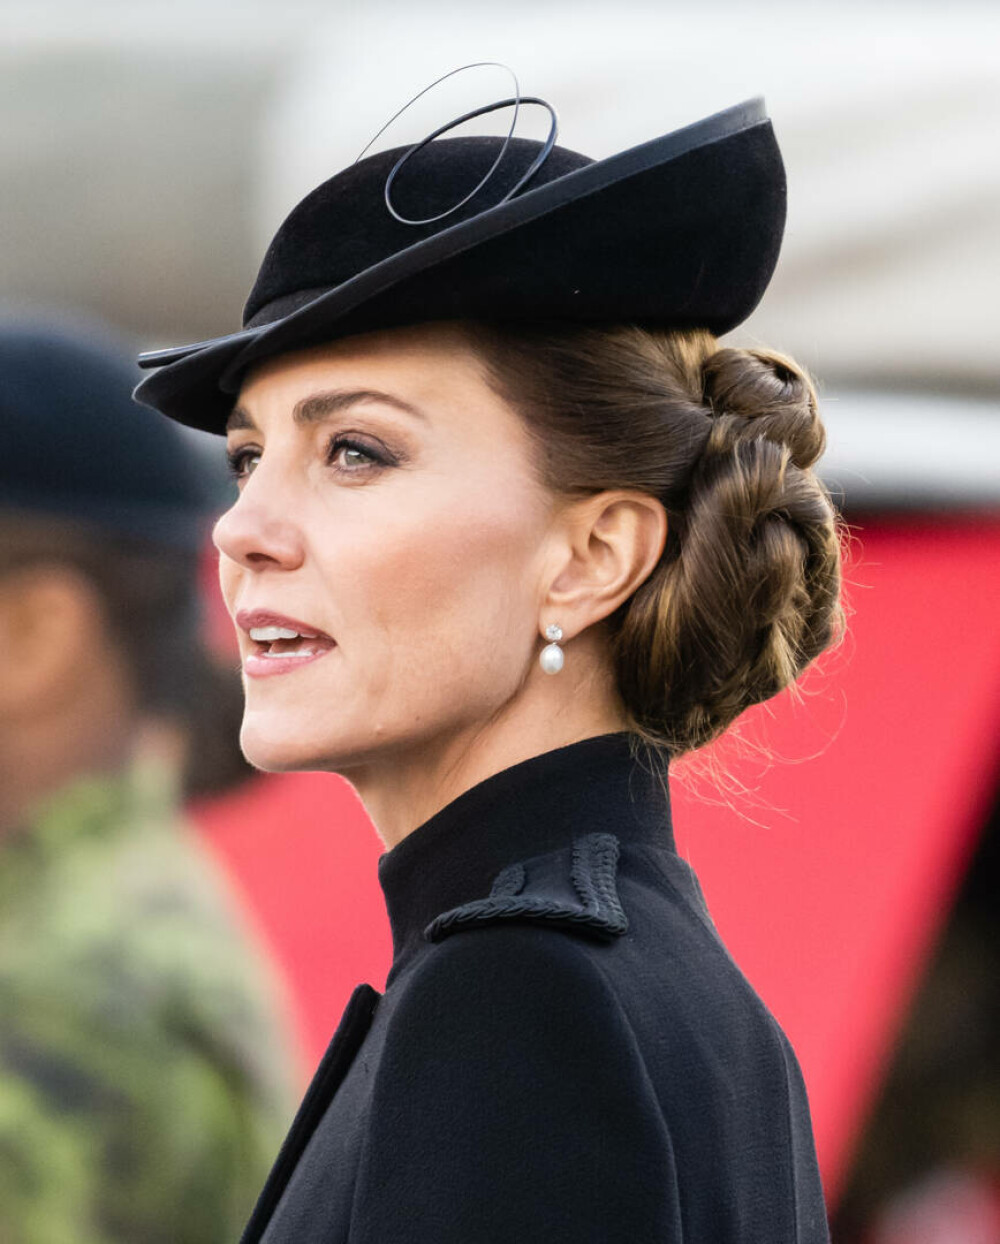 Ținuta lui Kate Middleton de la funeraliile reginei Elisabeta a II-a. Prințesa a purtat un colier special | GALERIE FOTO - Imaginea 3